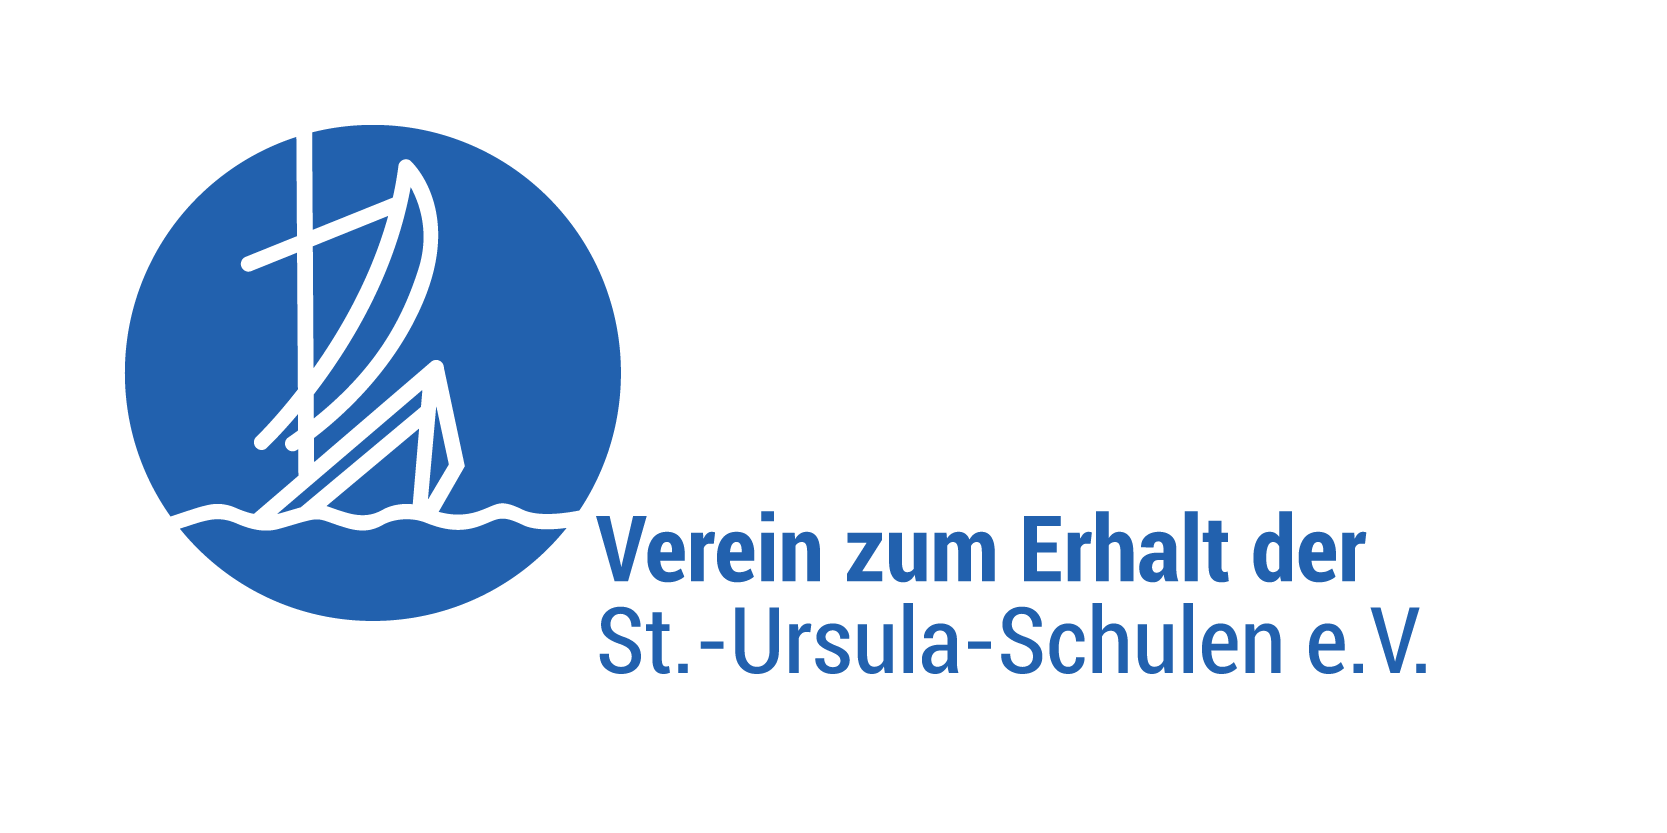 Verein zum Erhalt der St.-Ursula Schulen